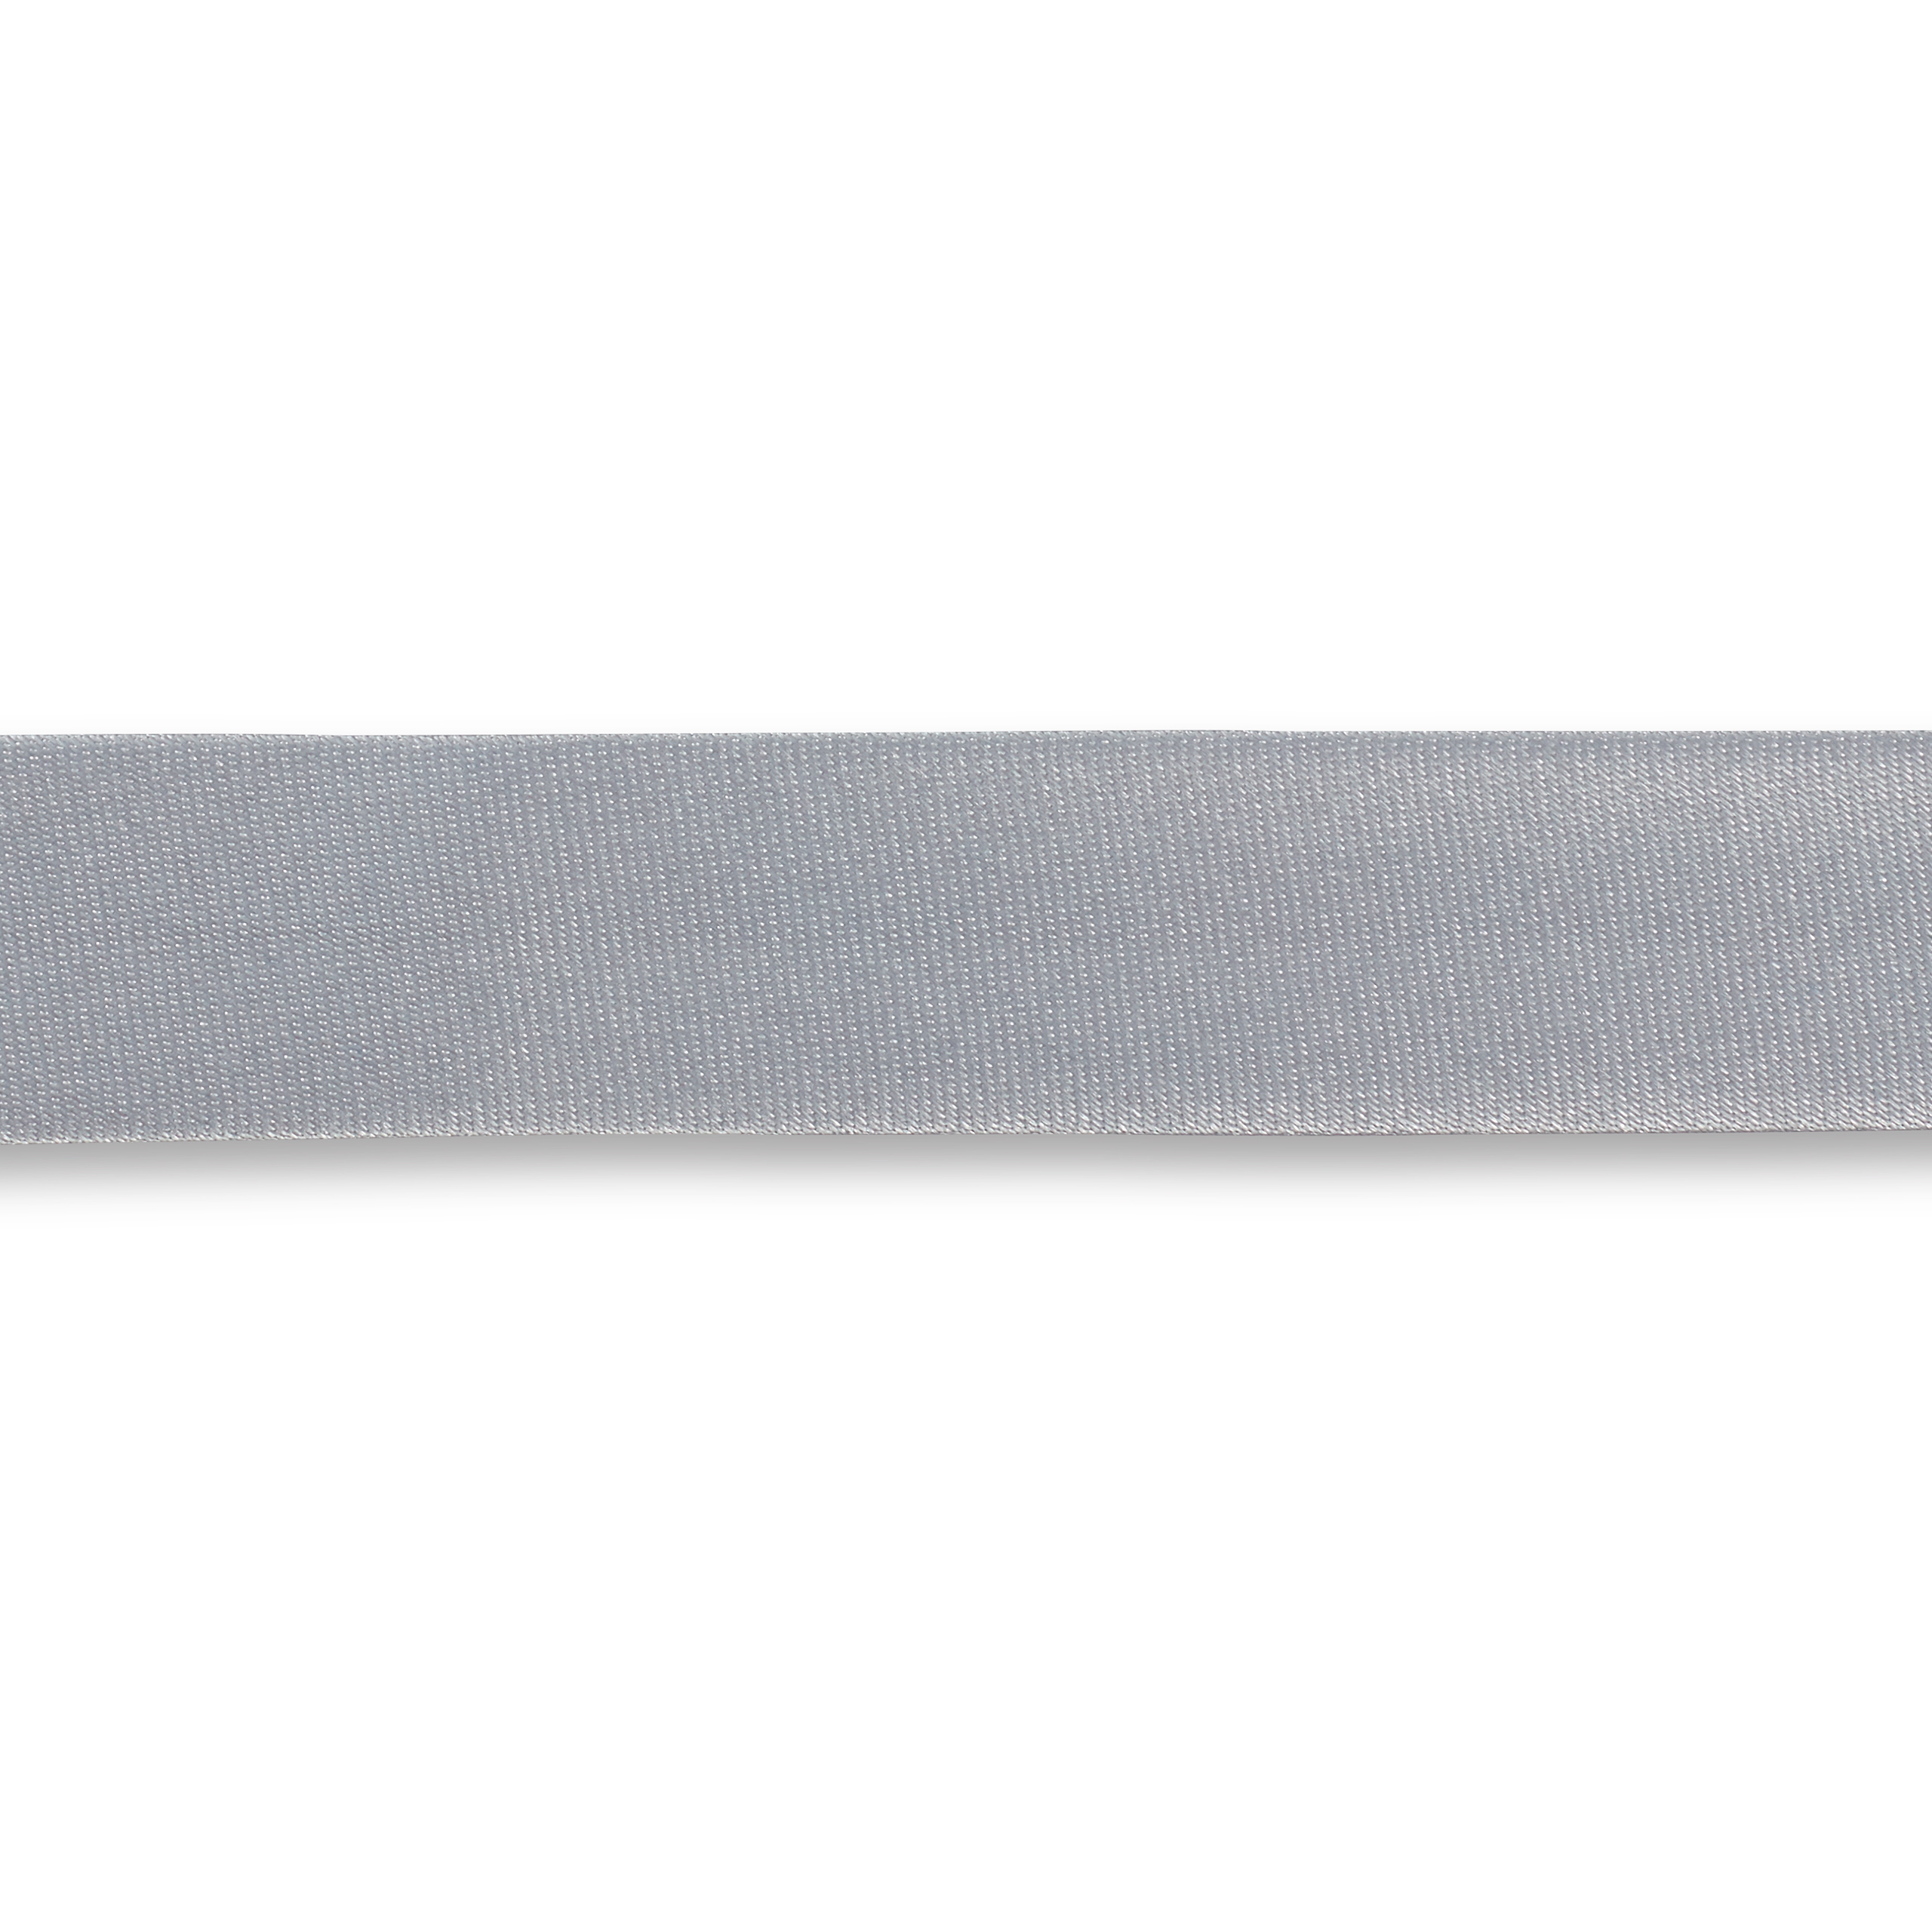 Schrägband Duchesse 40/20 mm silber, Meterware, Einfassband 